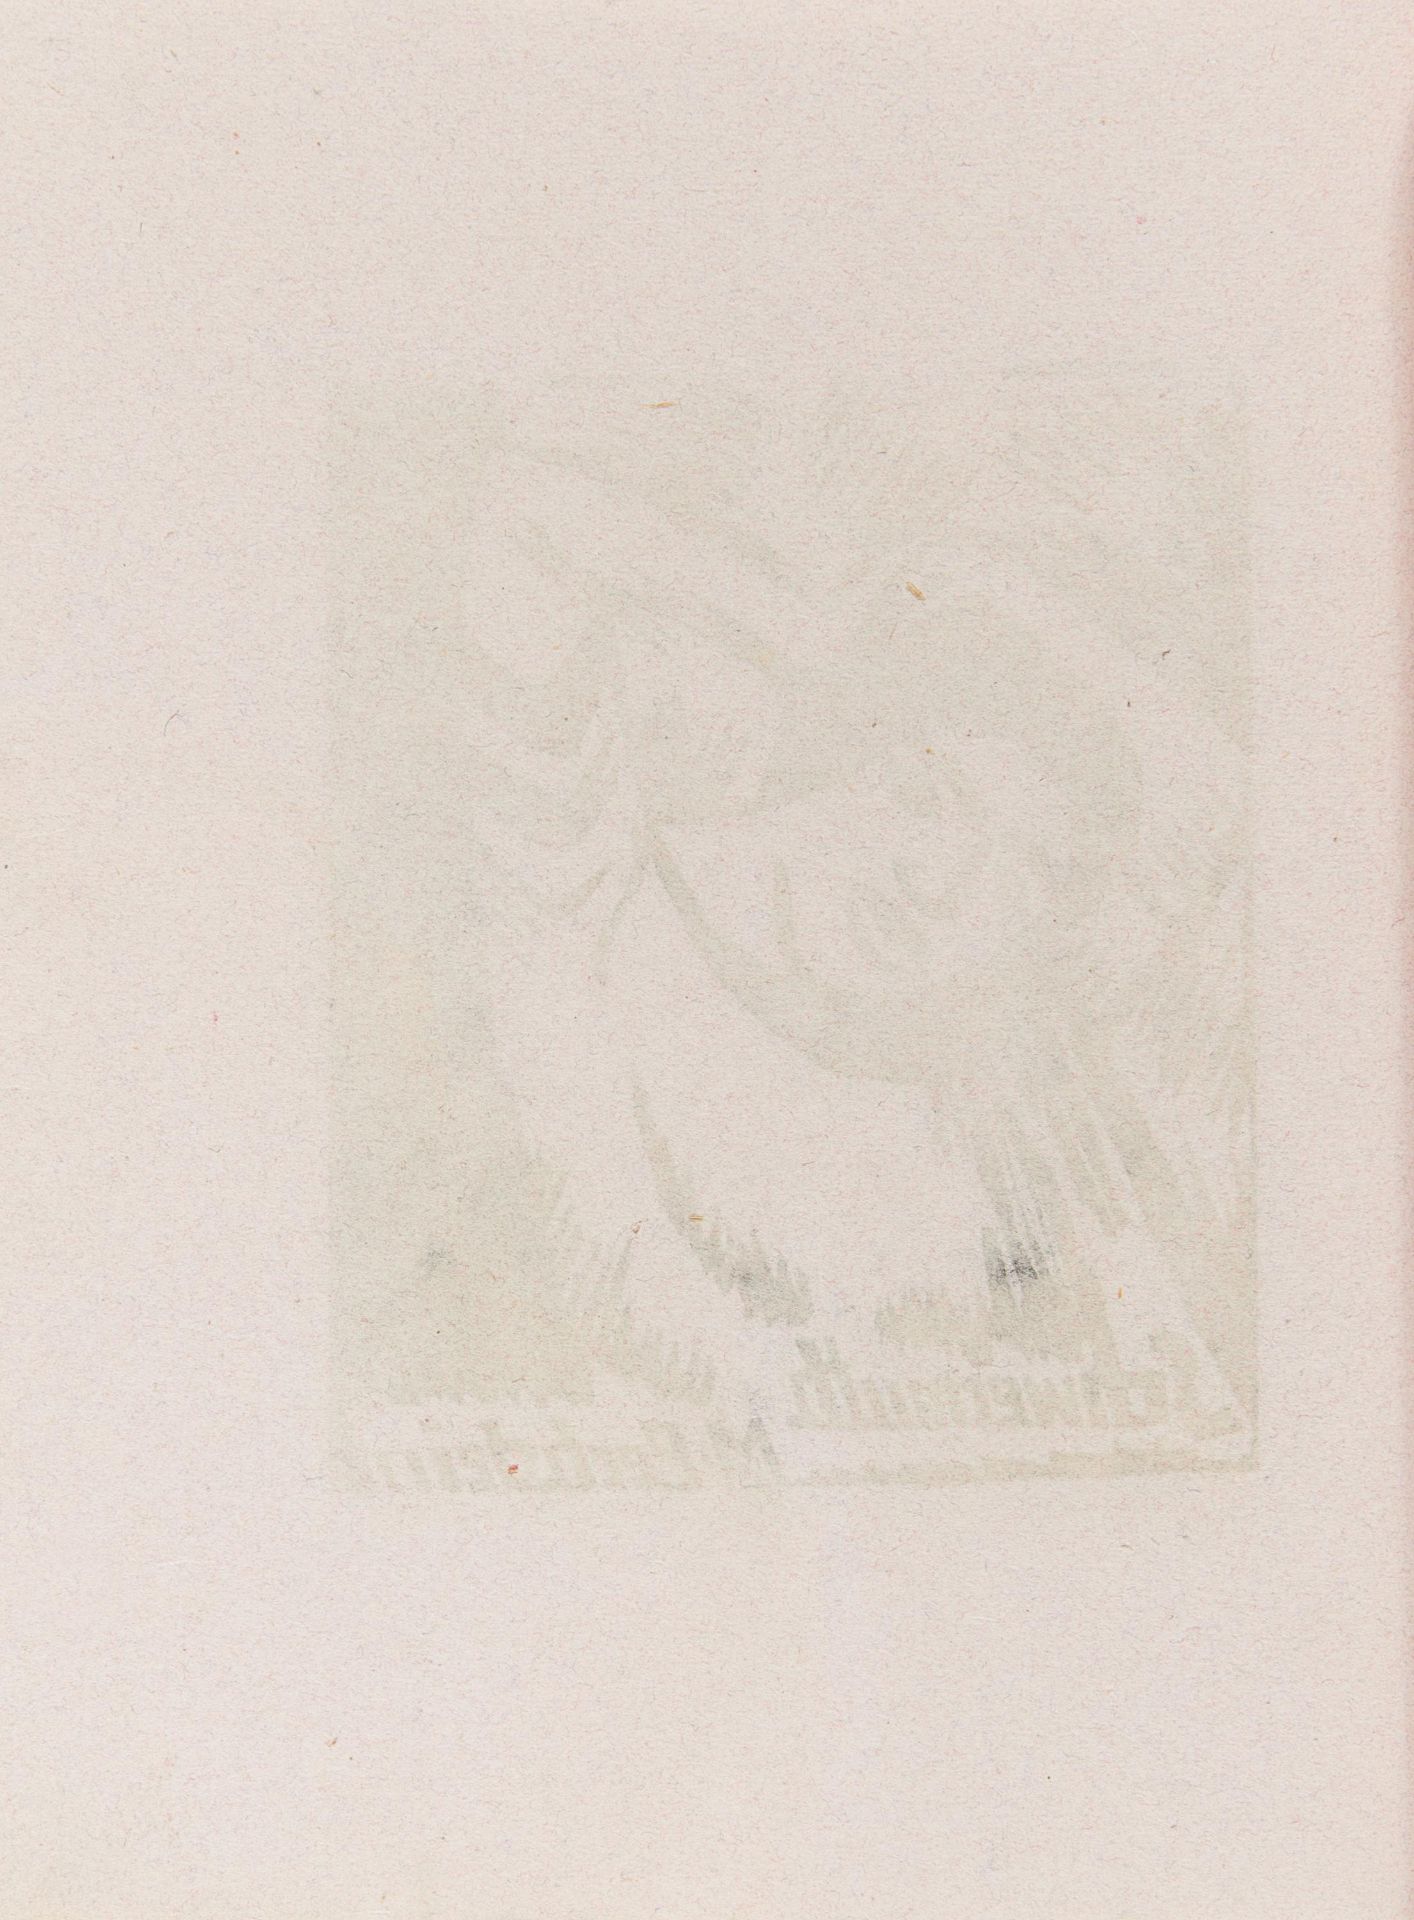 Mappenwerk Ausstellung von Künstlergruppe Brücke. 1912. Heft zur Ausstellung im Kunstsalon Fritz - Image 8 of 20